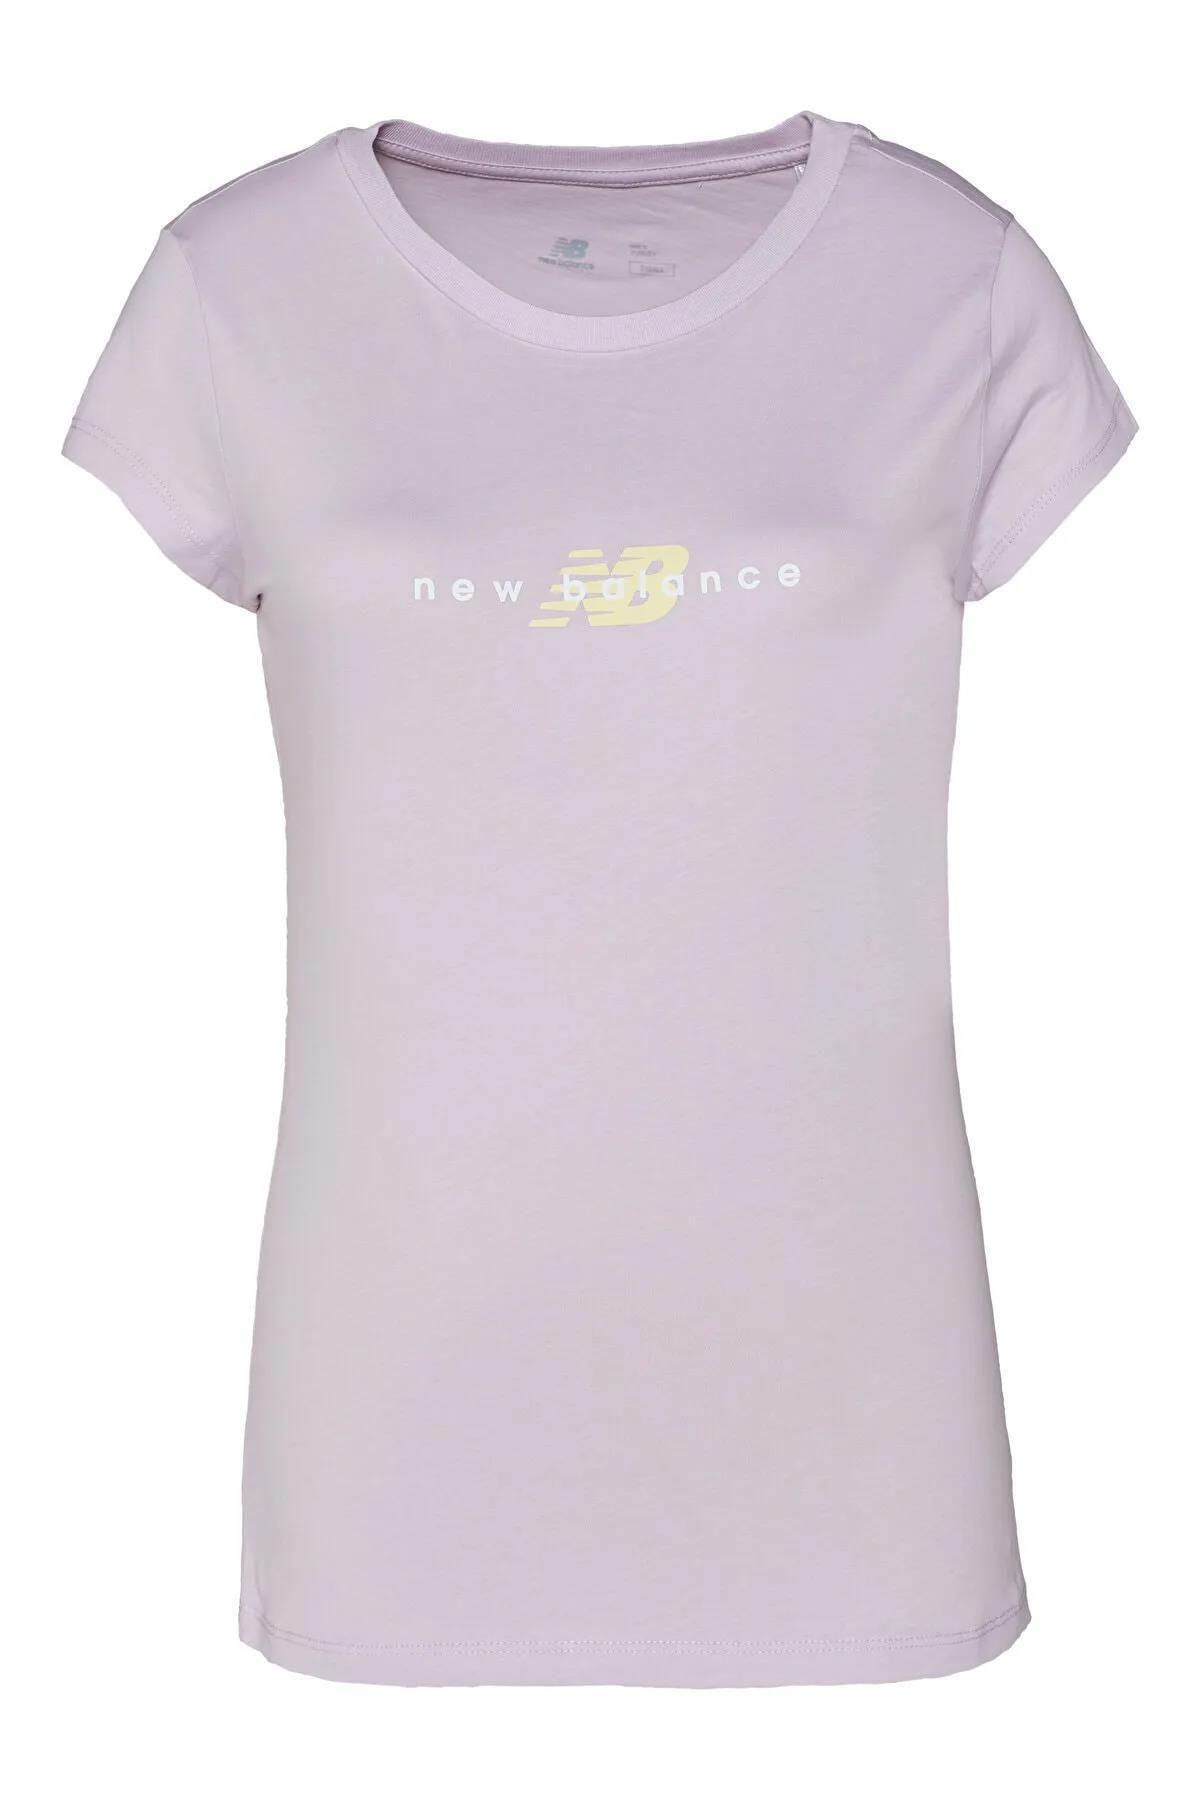 New Balance Wtt2033-pbr Logo Tee Kadın Tişört